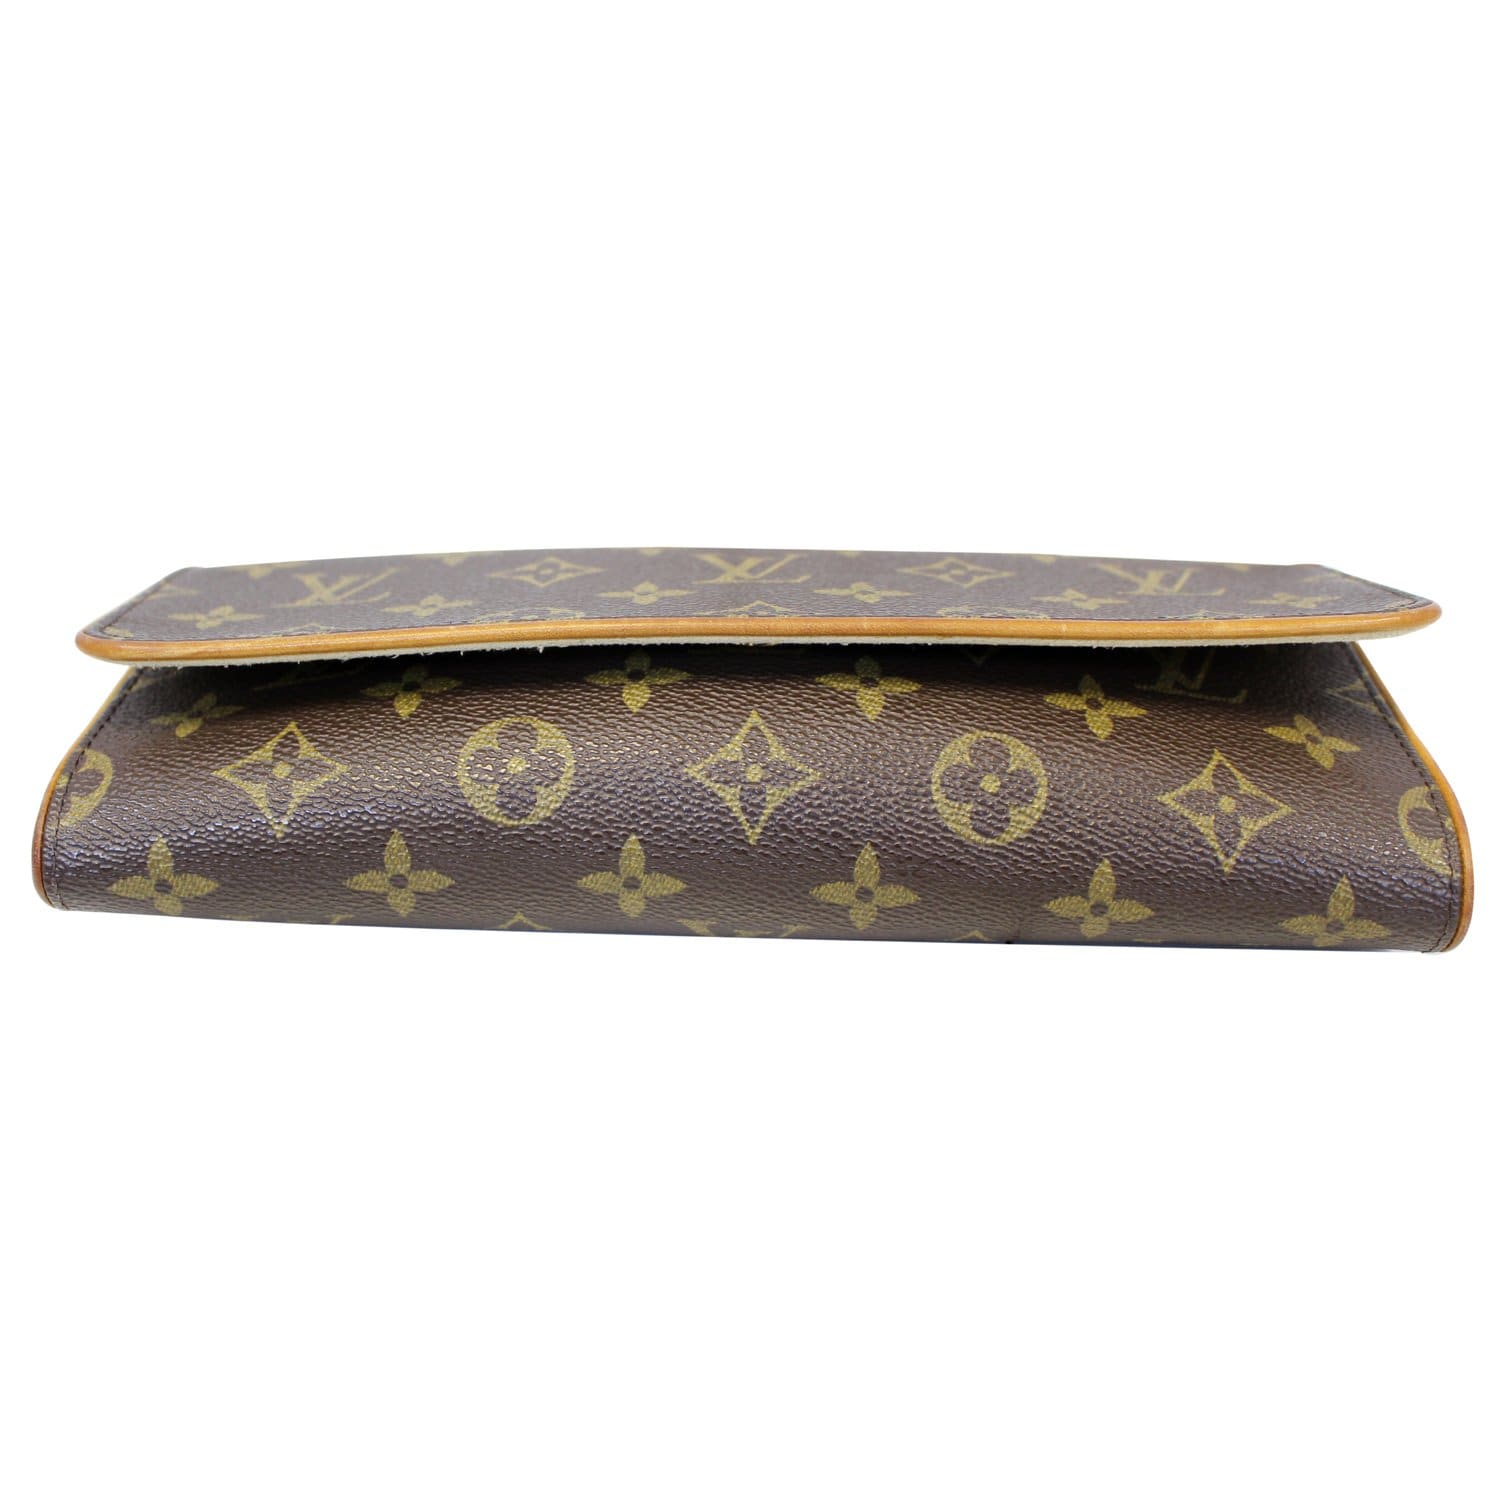 Louis Vuitton Twin Shoulder bag 344869